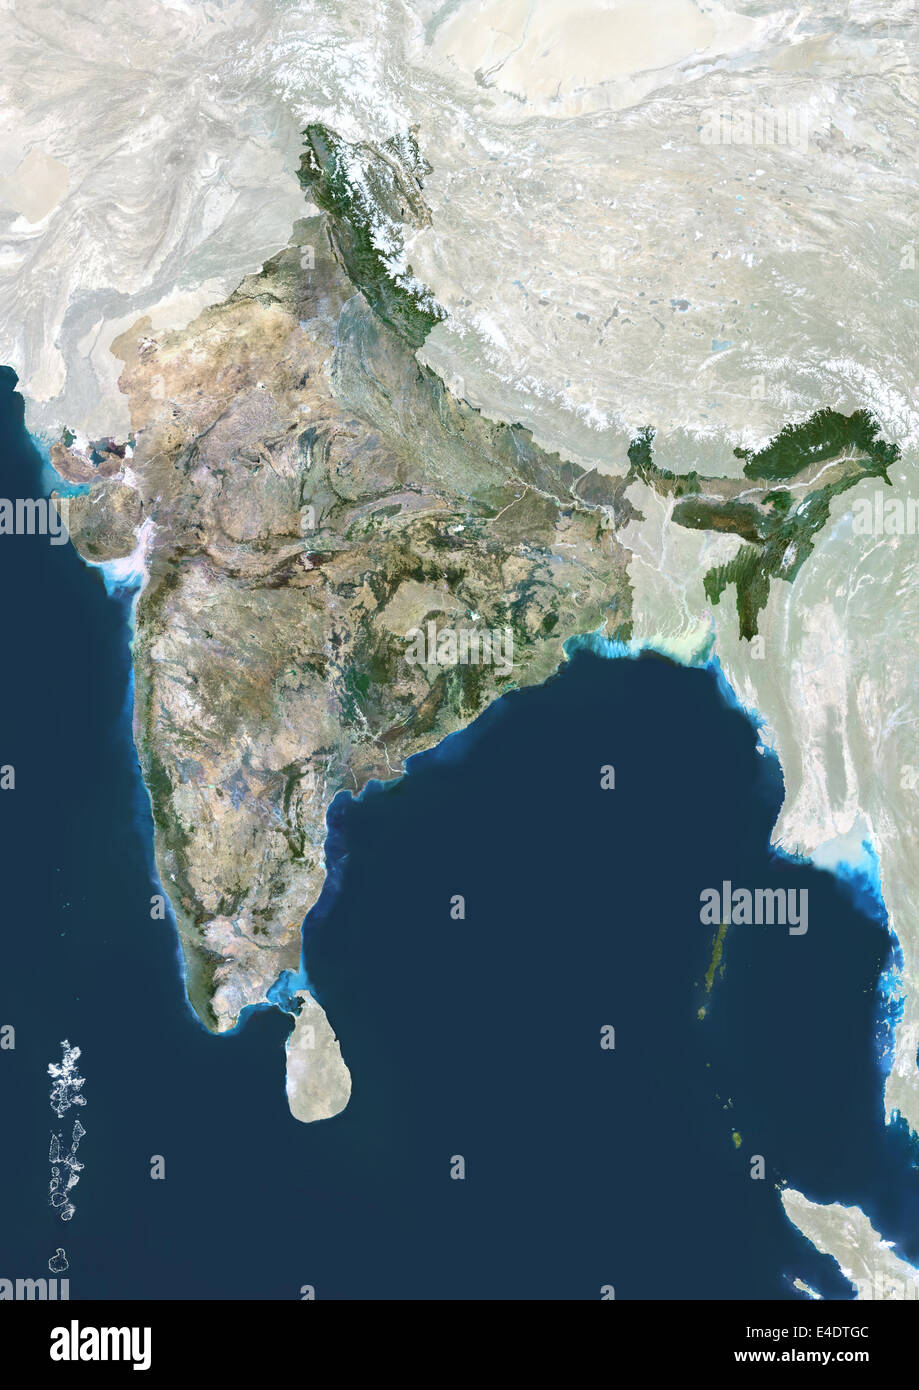 Indien, Echtfarben-Satellitenbild mit Maske. Indien, Echtfarben-Satellitenbild mit Maske, die dieses Bild von Daten Acq kompiliert wurde Stockfoto